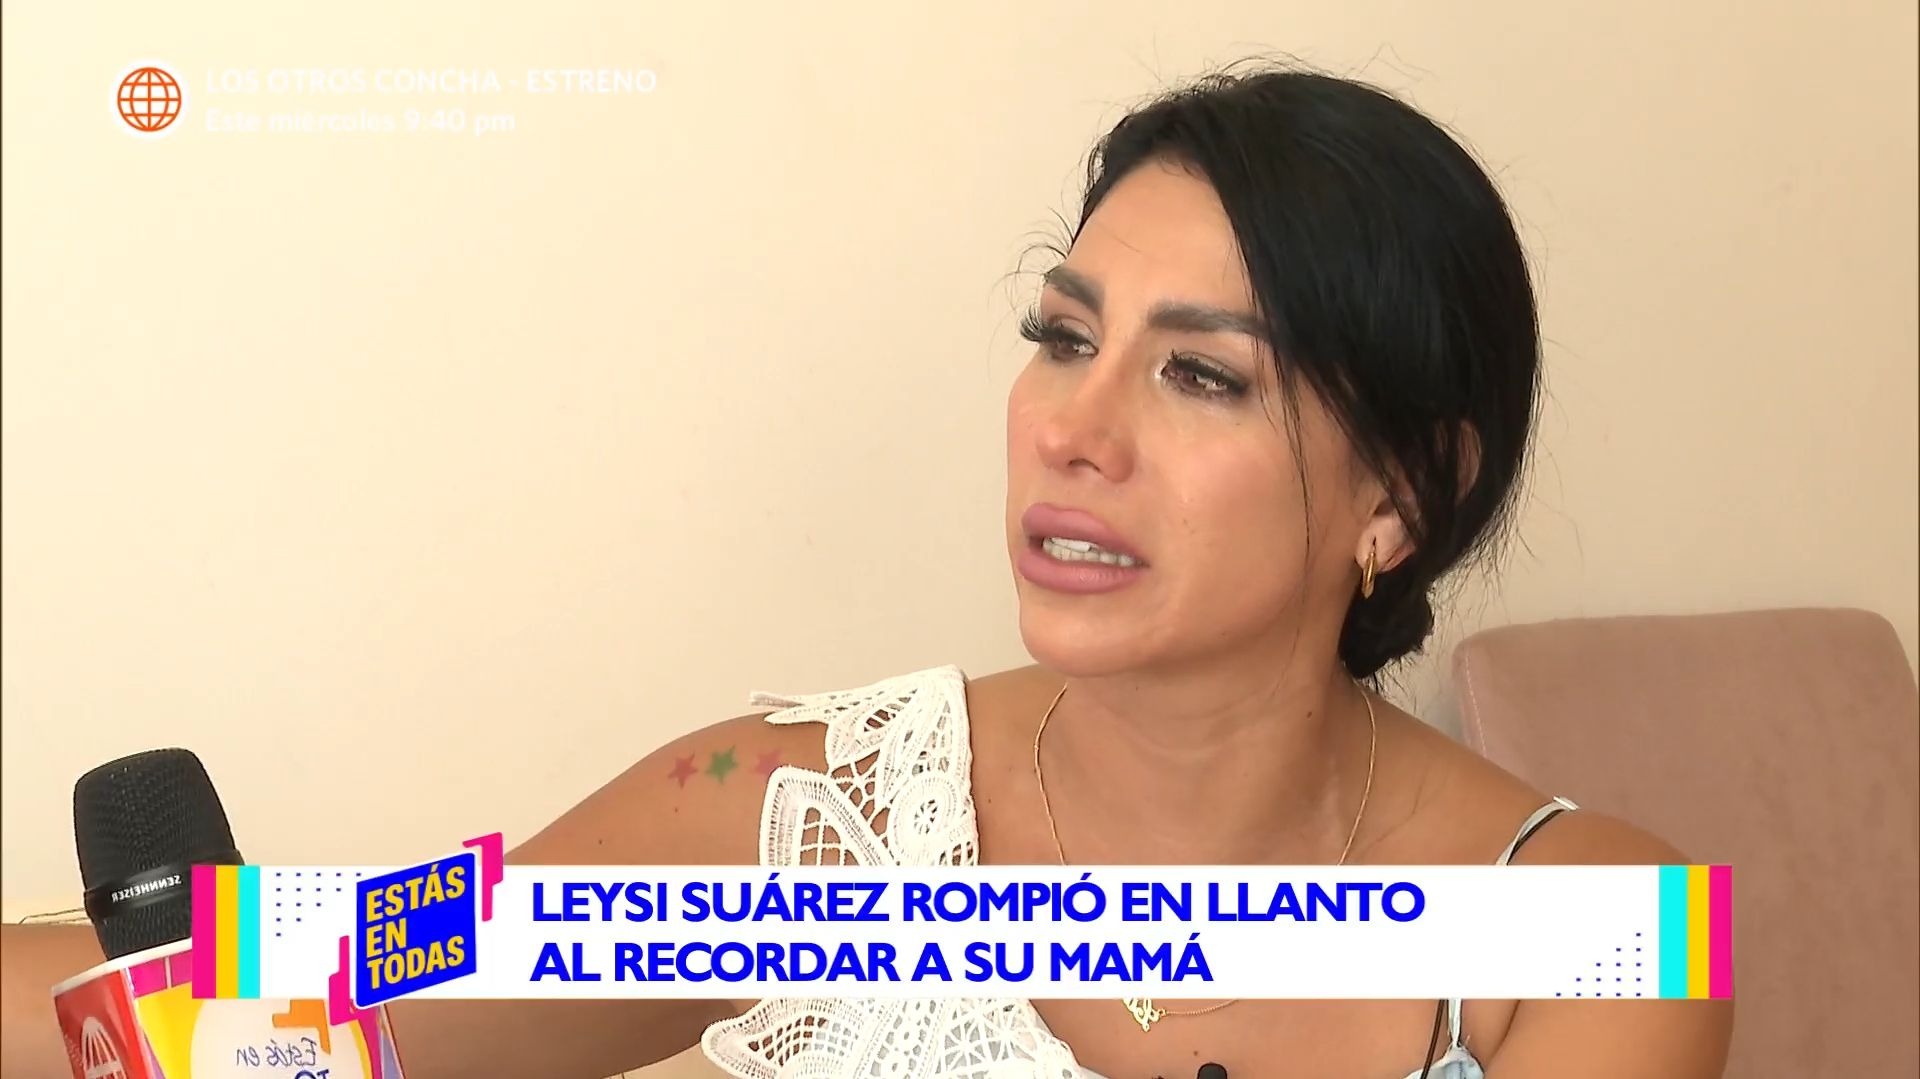 Leysi Suárez contó cómo reaccionó su mamá cuando se enteró que sería conductora de 'América Hoy' / Estás en Todas